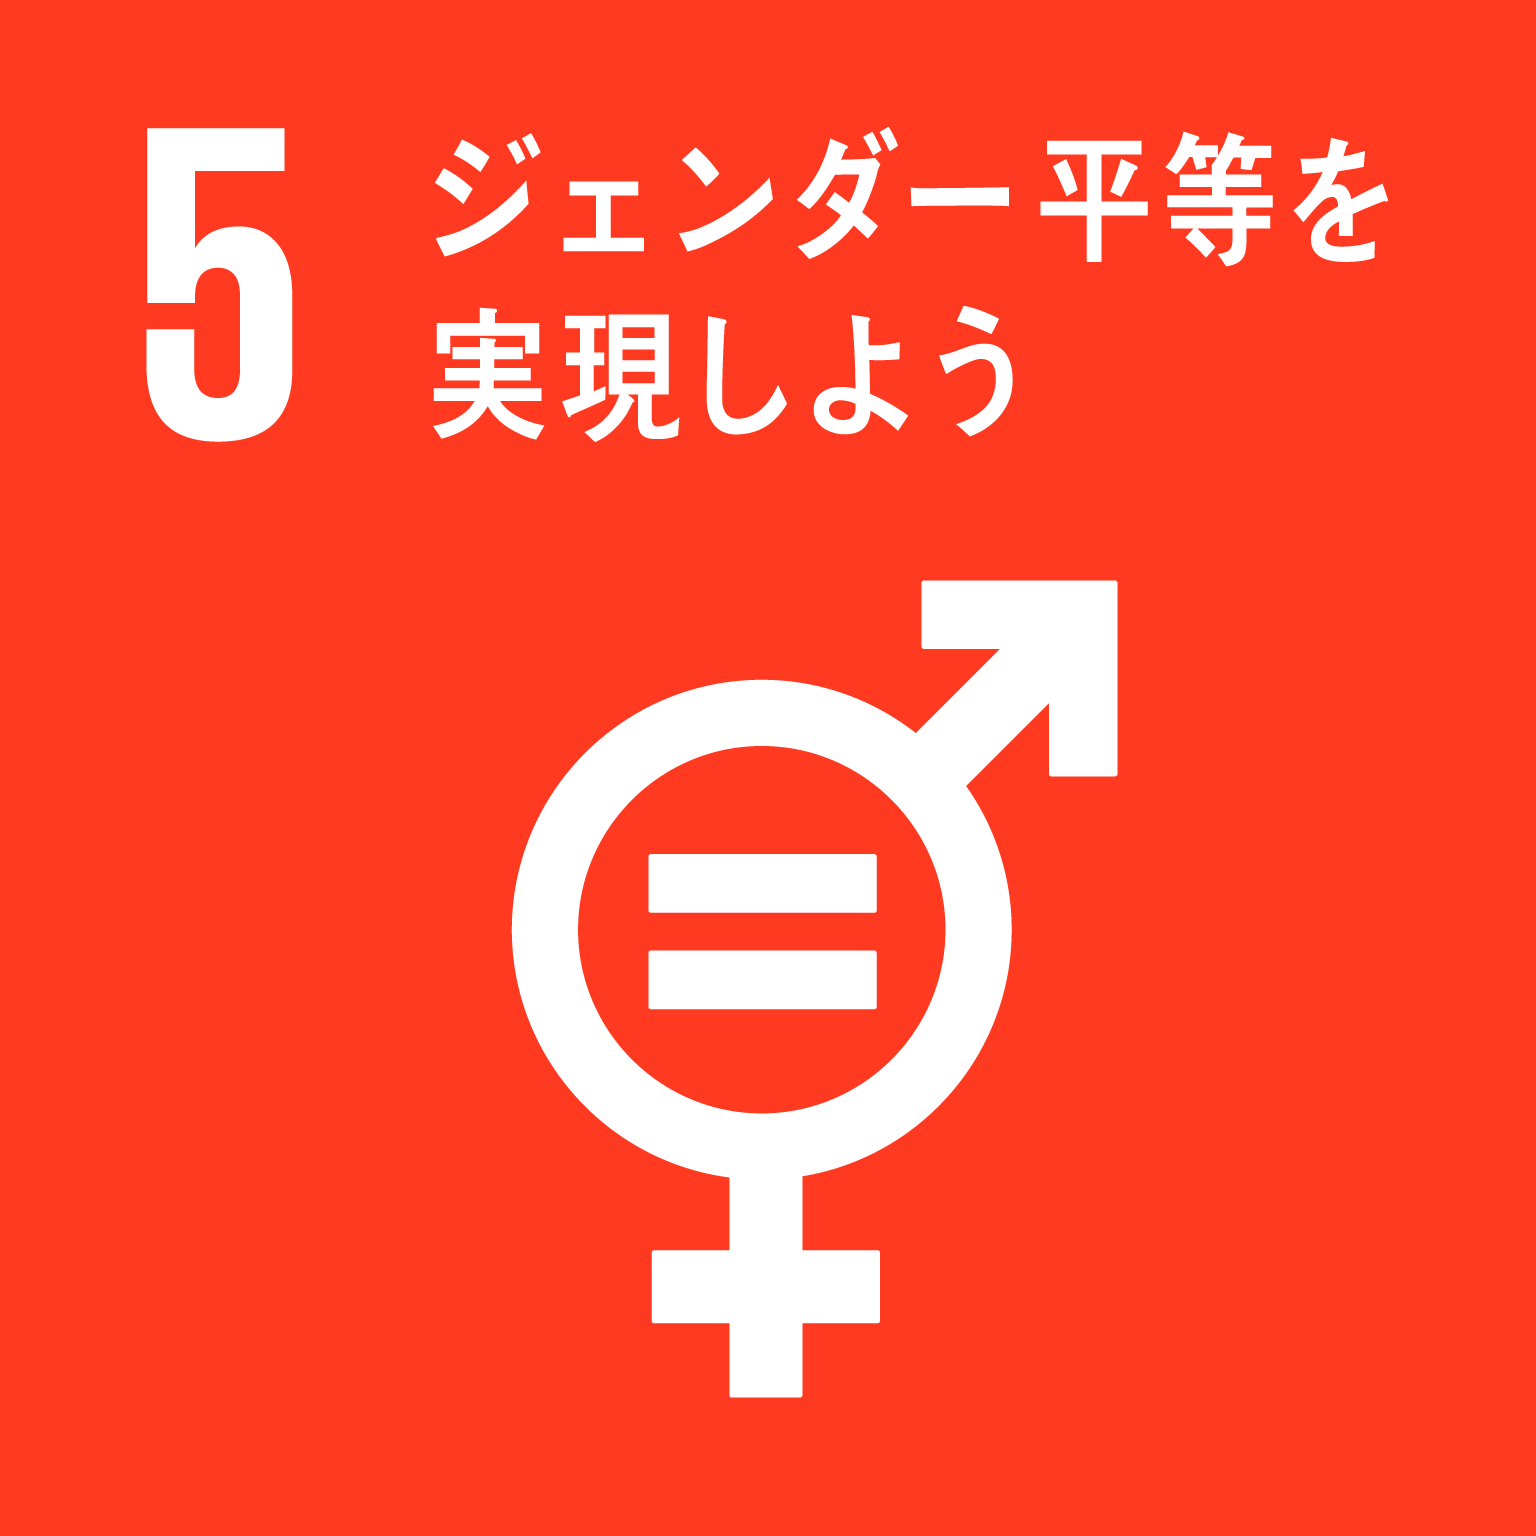 目標5ジェンダー平等を実現しようのロゴ